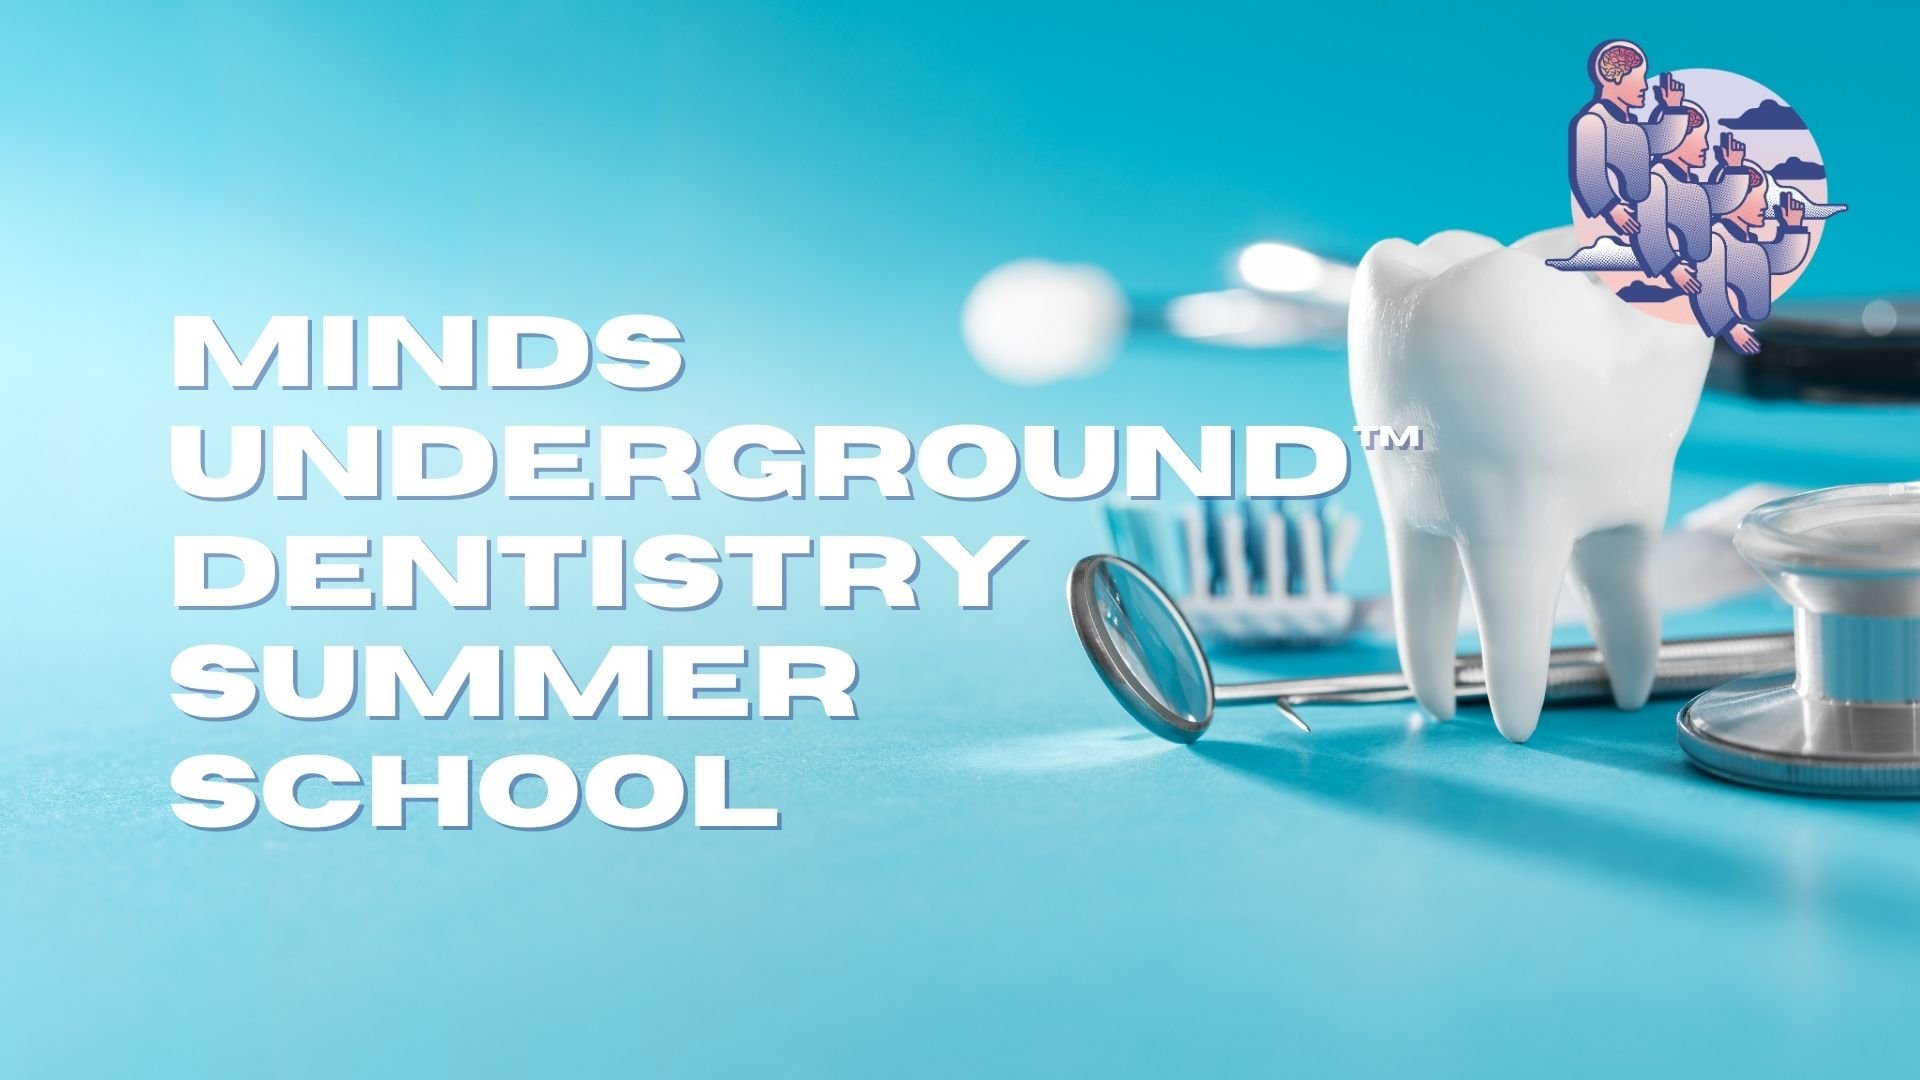 Dentistry Summer School.jpg